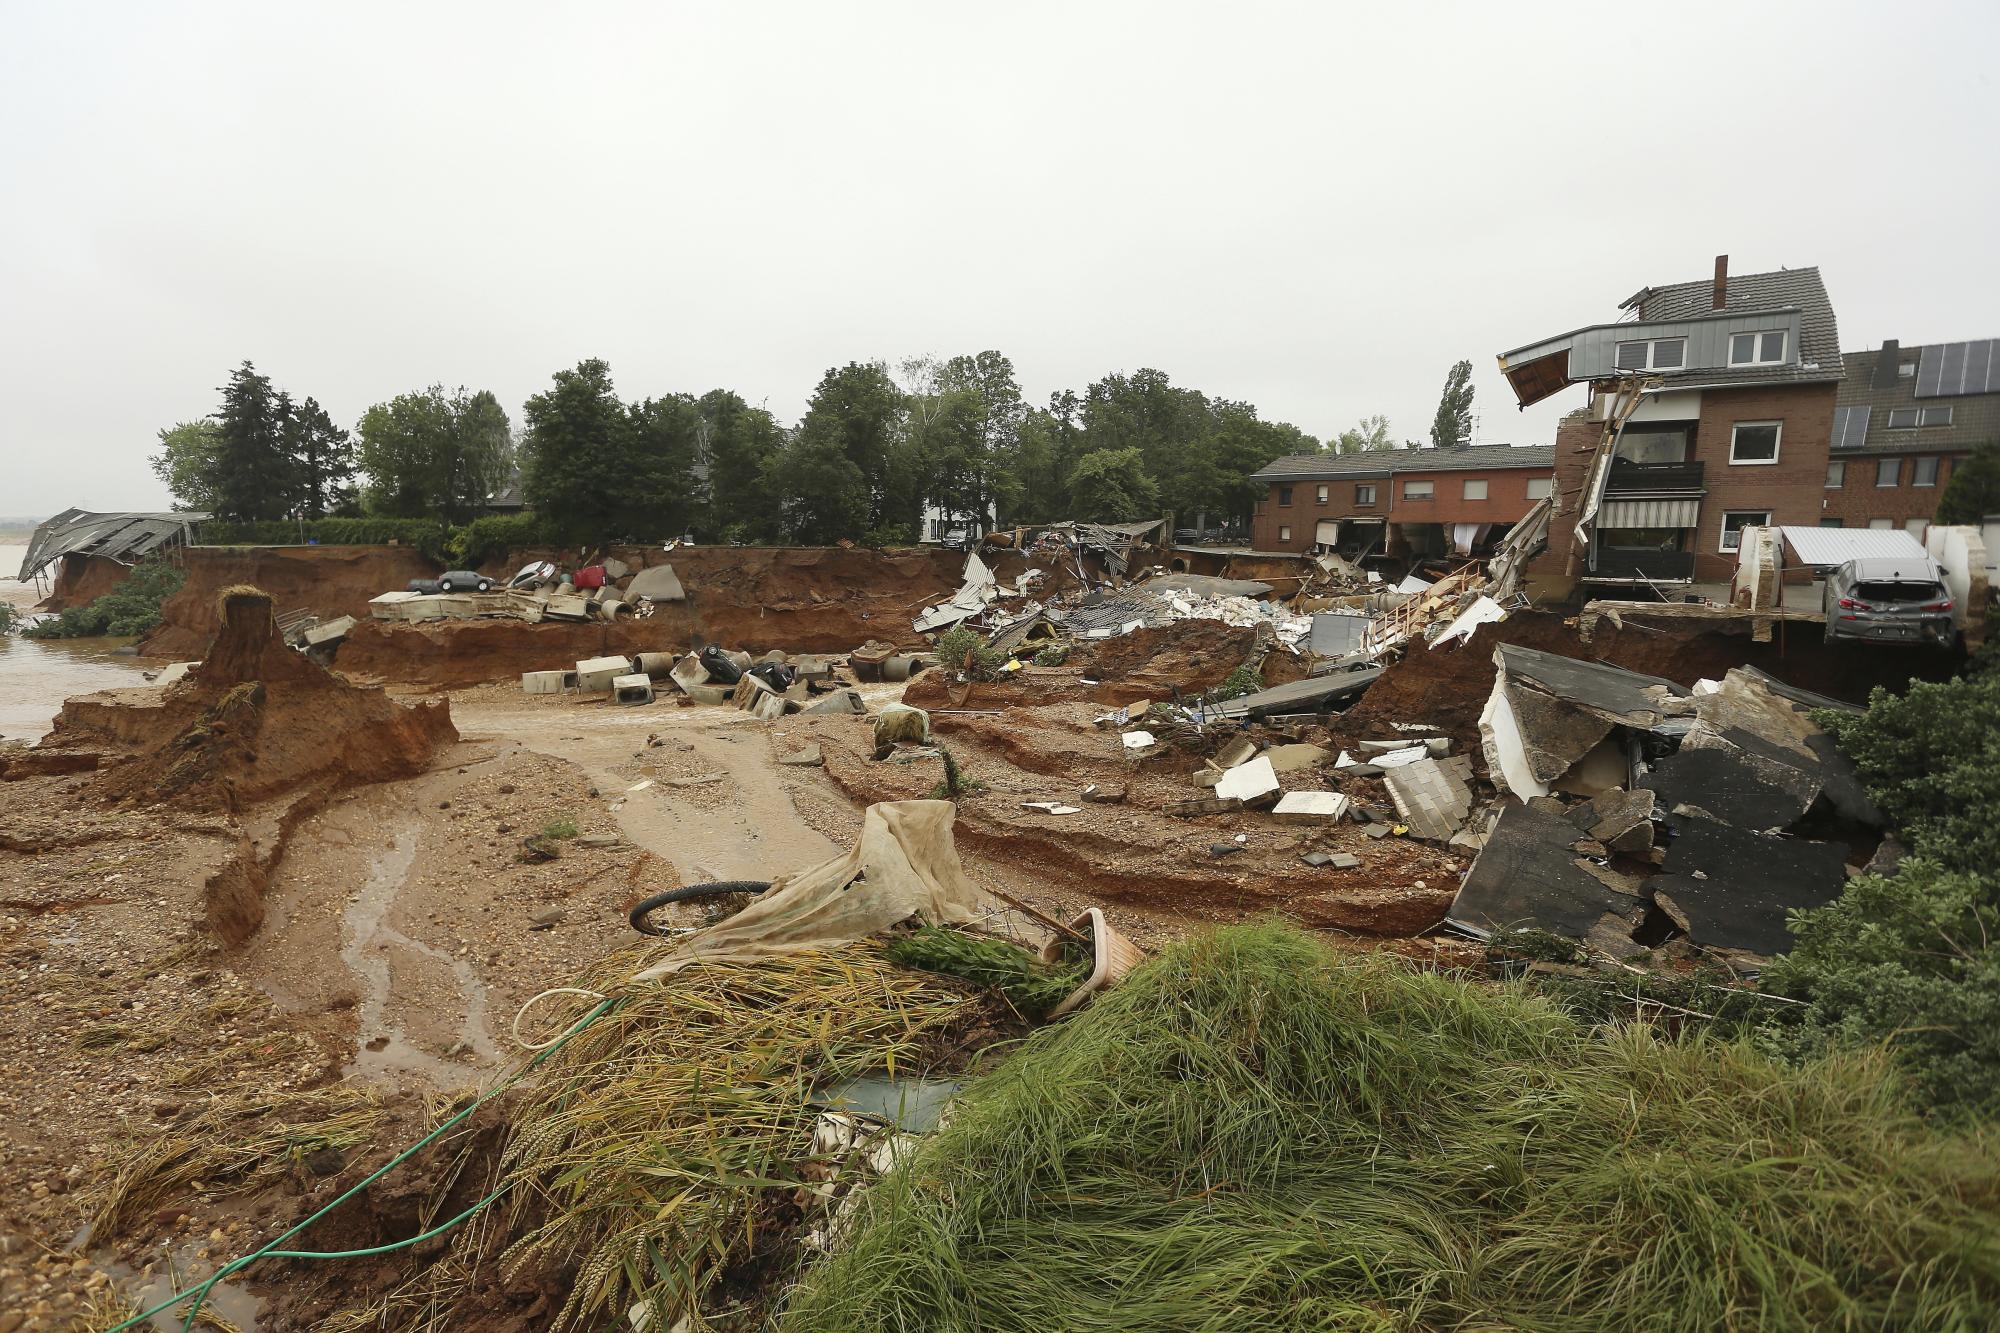 Escombros de casas derrumbadas son imágenes en el distrito Blessem de Erftstadt, Alemania, el viernes 16 de julio de 2021. Las fuertes lluvias provocaron deslizamientos de tierra e inundaciones en la parte occidental de Alemania. (David Young / dpa vía AP)